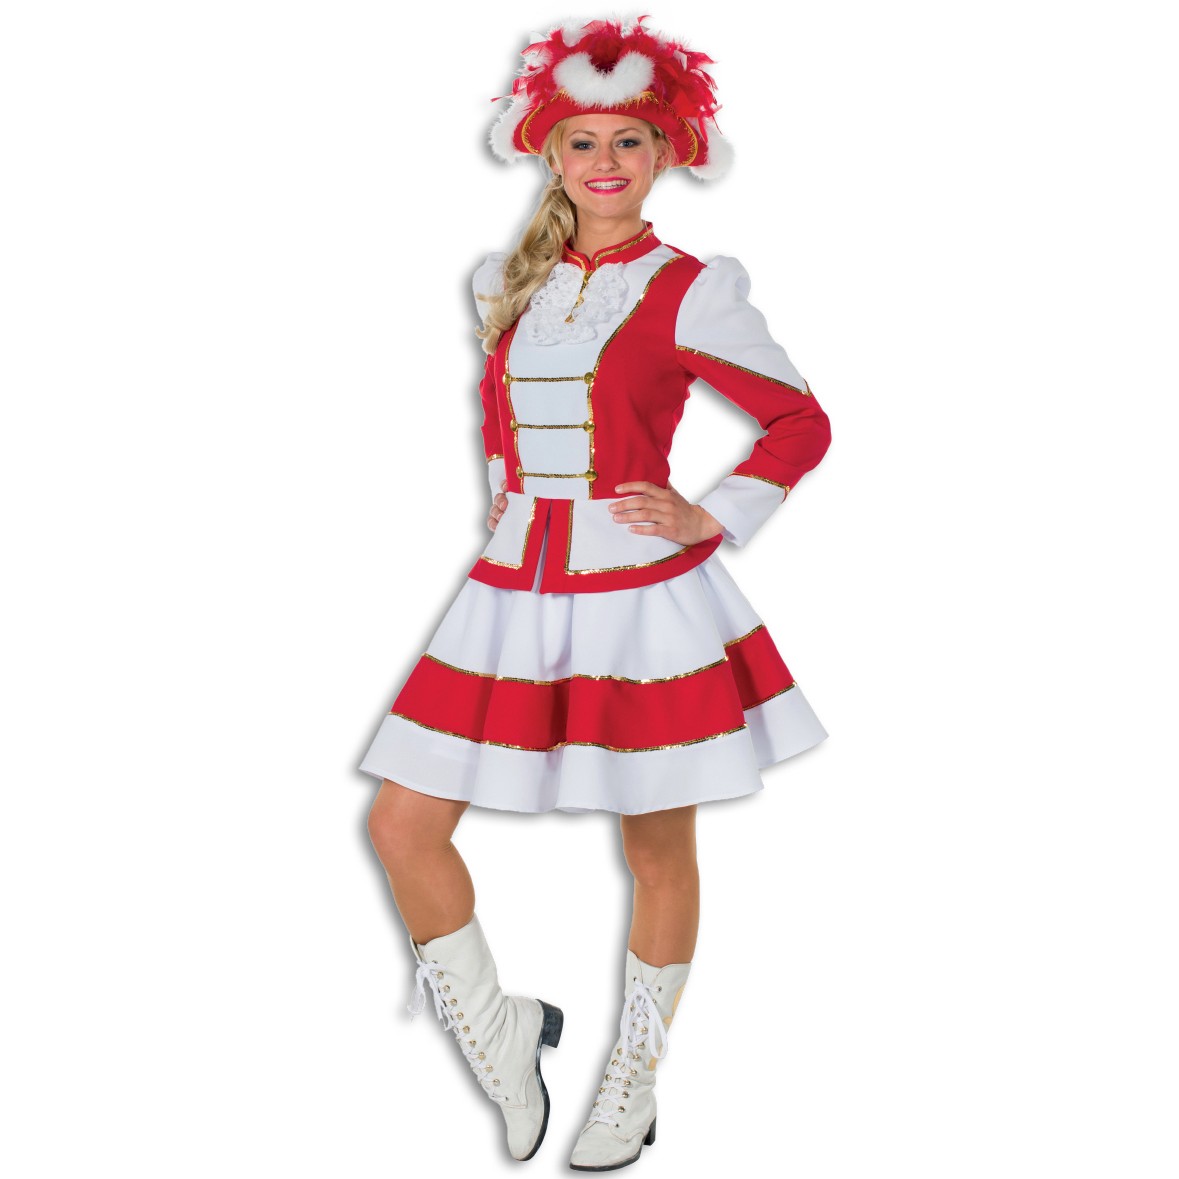 rot/weiß FUNKENMARIECHEN Gr L 42/44 Damen Kostüm Tanzmariechen Garde Uniform 